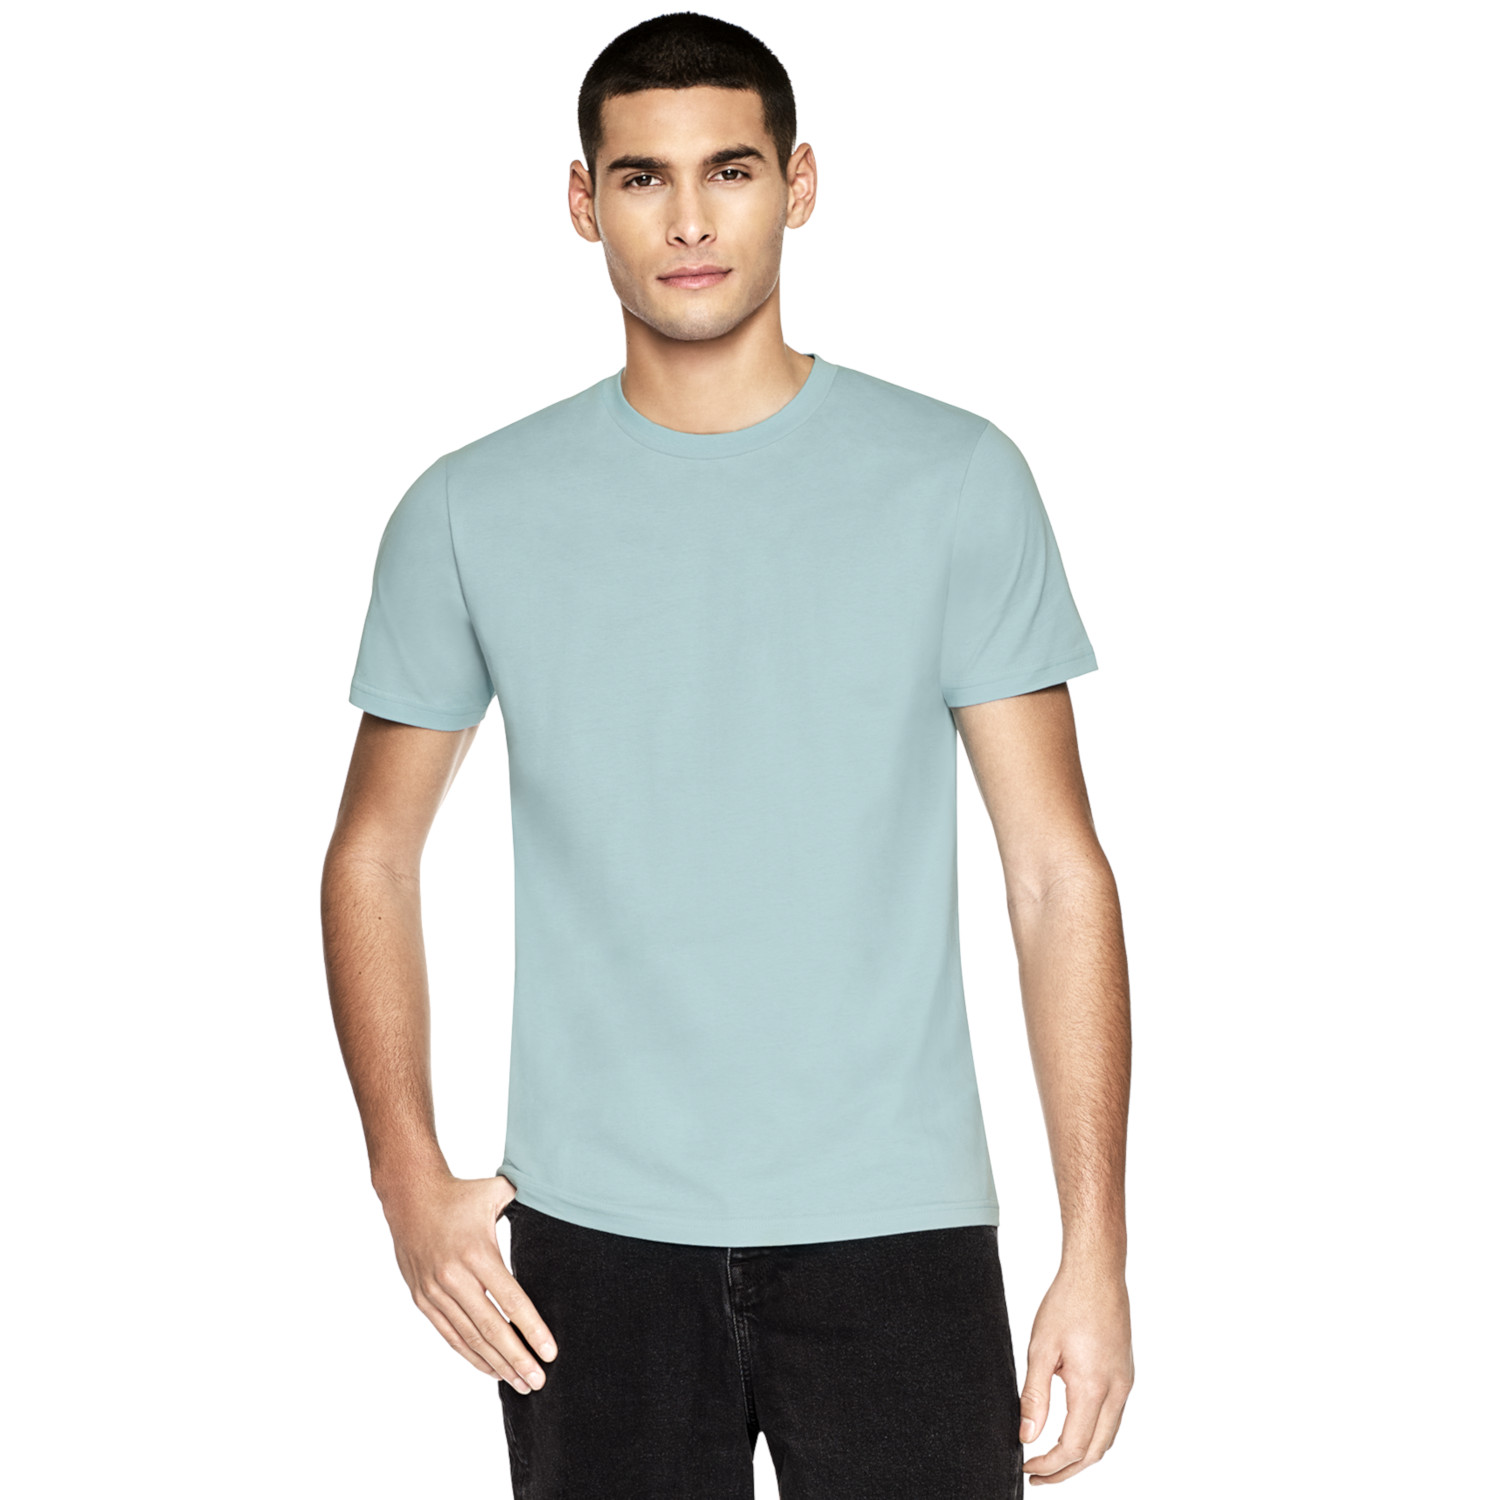 T-shirt unisex manica corta Colori Tendenza in puro cotone biologico_74926